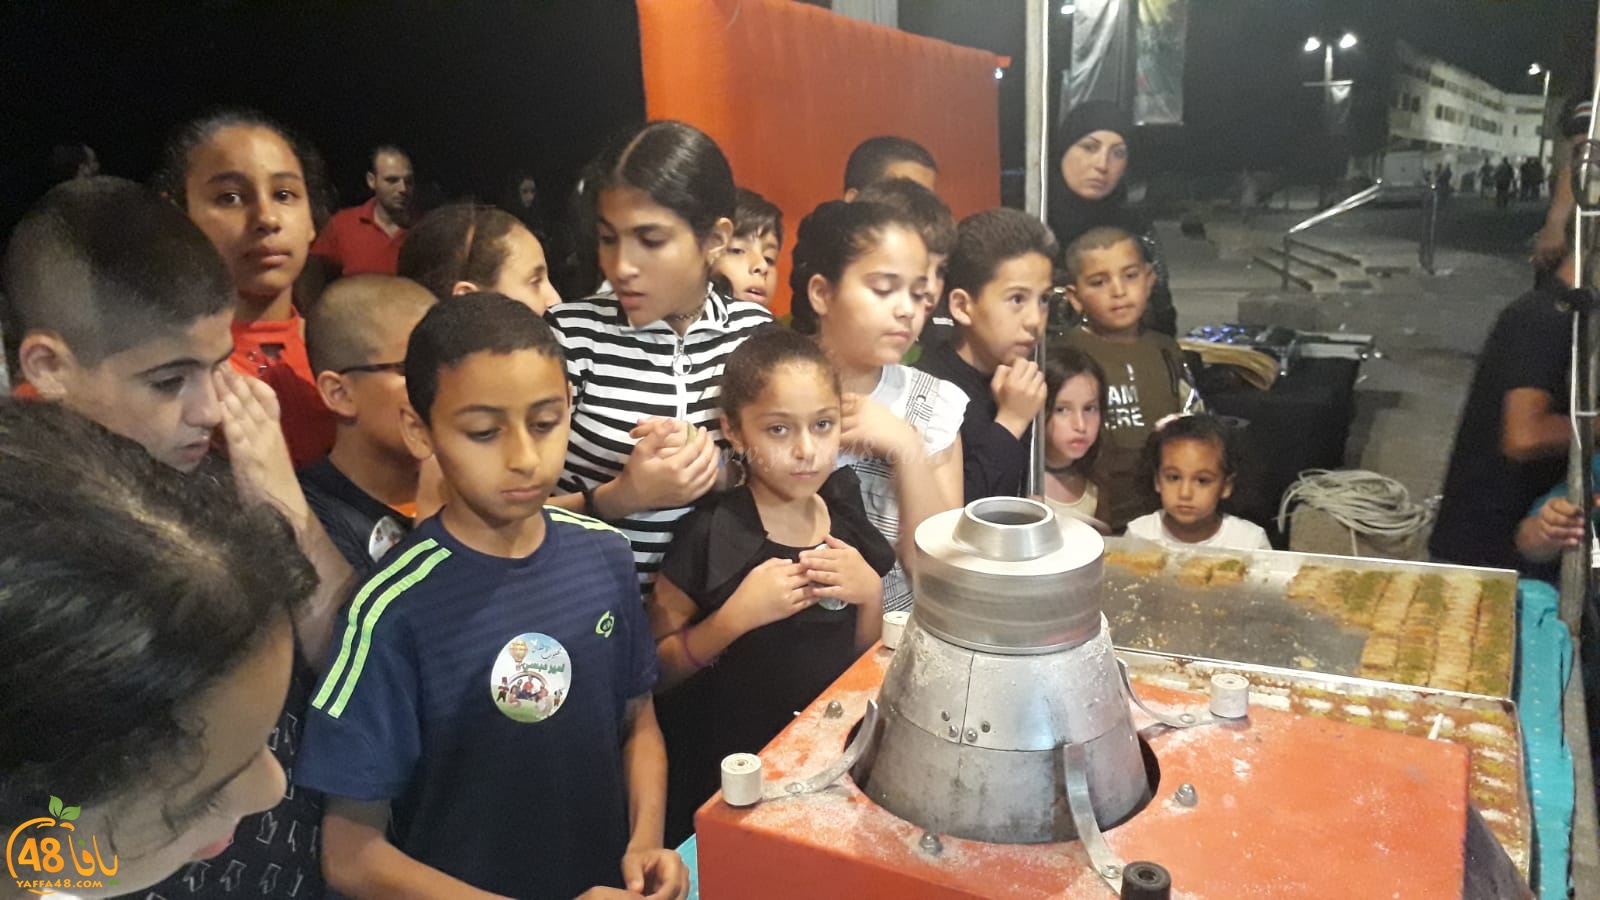   بالصور: فعاليات شيّقة للأطفال في ميناء يافا باشراف جمعة أبو طبيخ